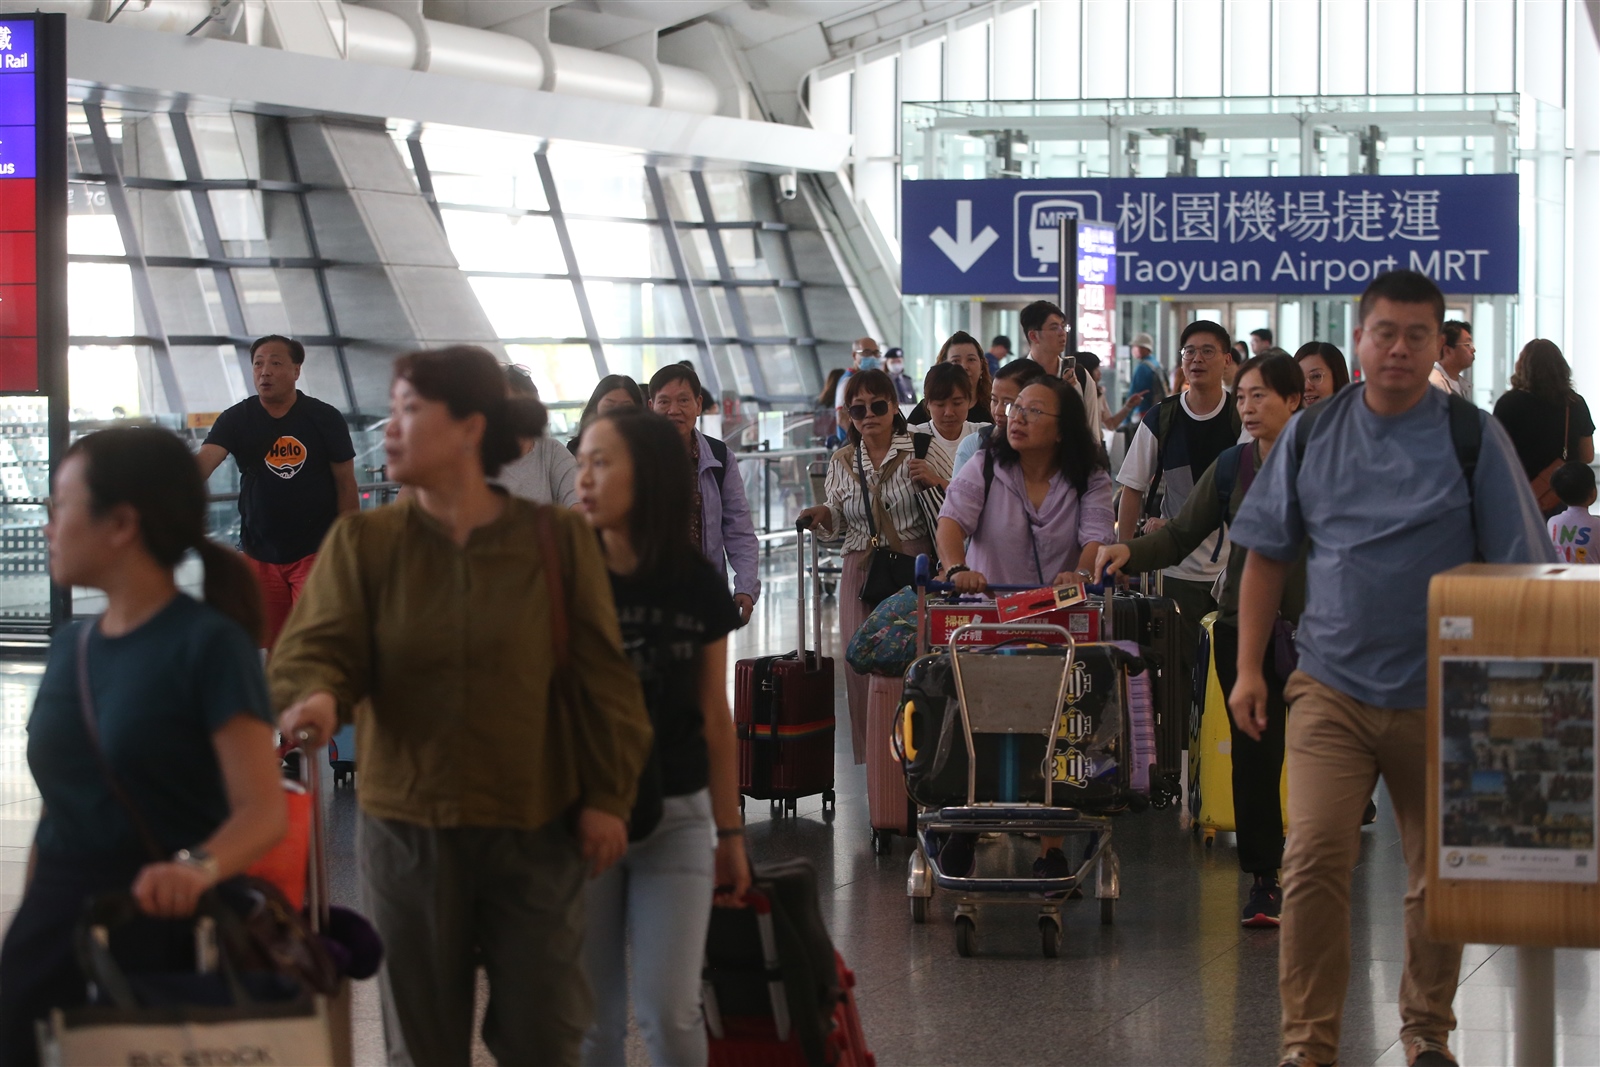 陸委會昨表示，規畫台灣旅遊業者組團赴陸，初期以每日2千人為限，引發旅行業界反彈聲浪。本報資料照 